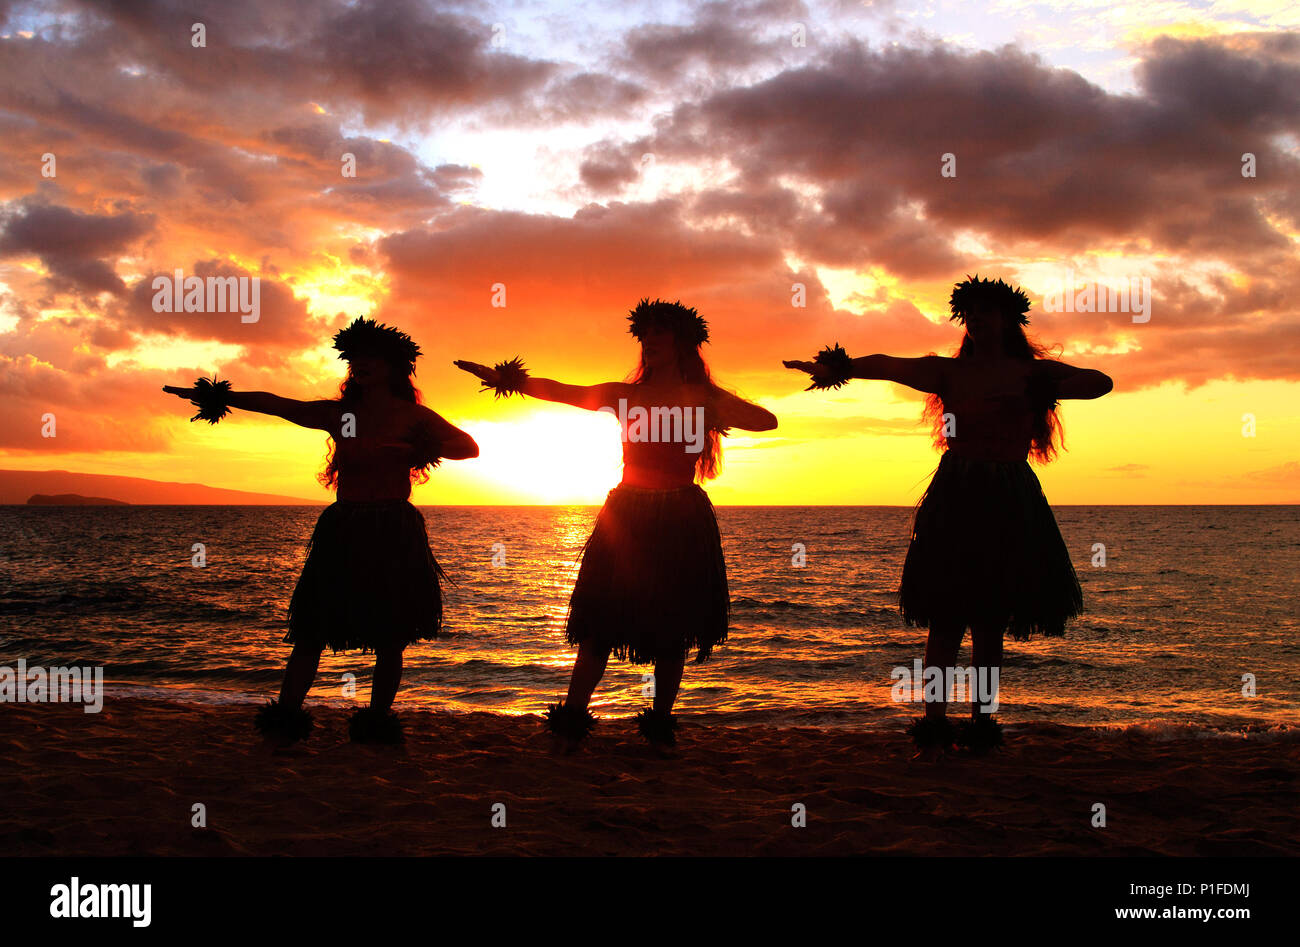 Three hula dancers at sunset at Palauea Beach, Maui, Hawaii. Stock Photo